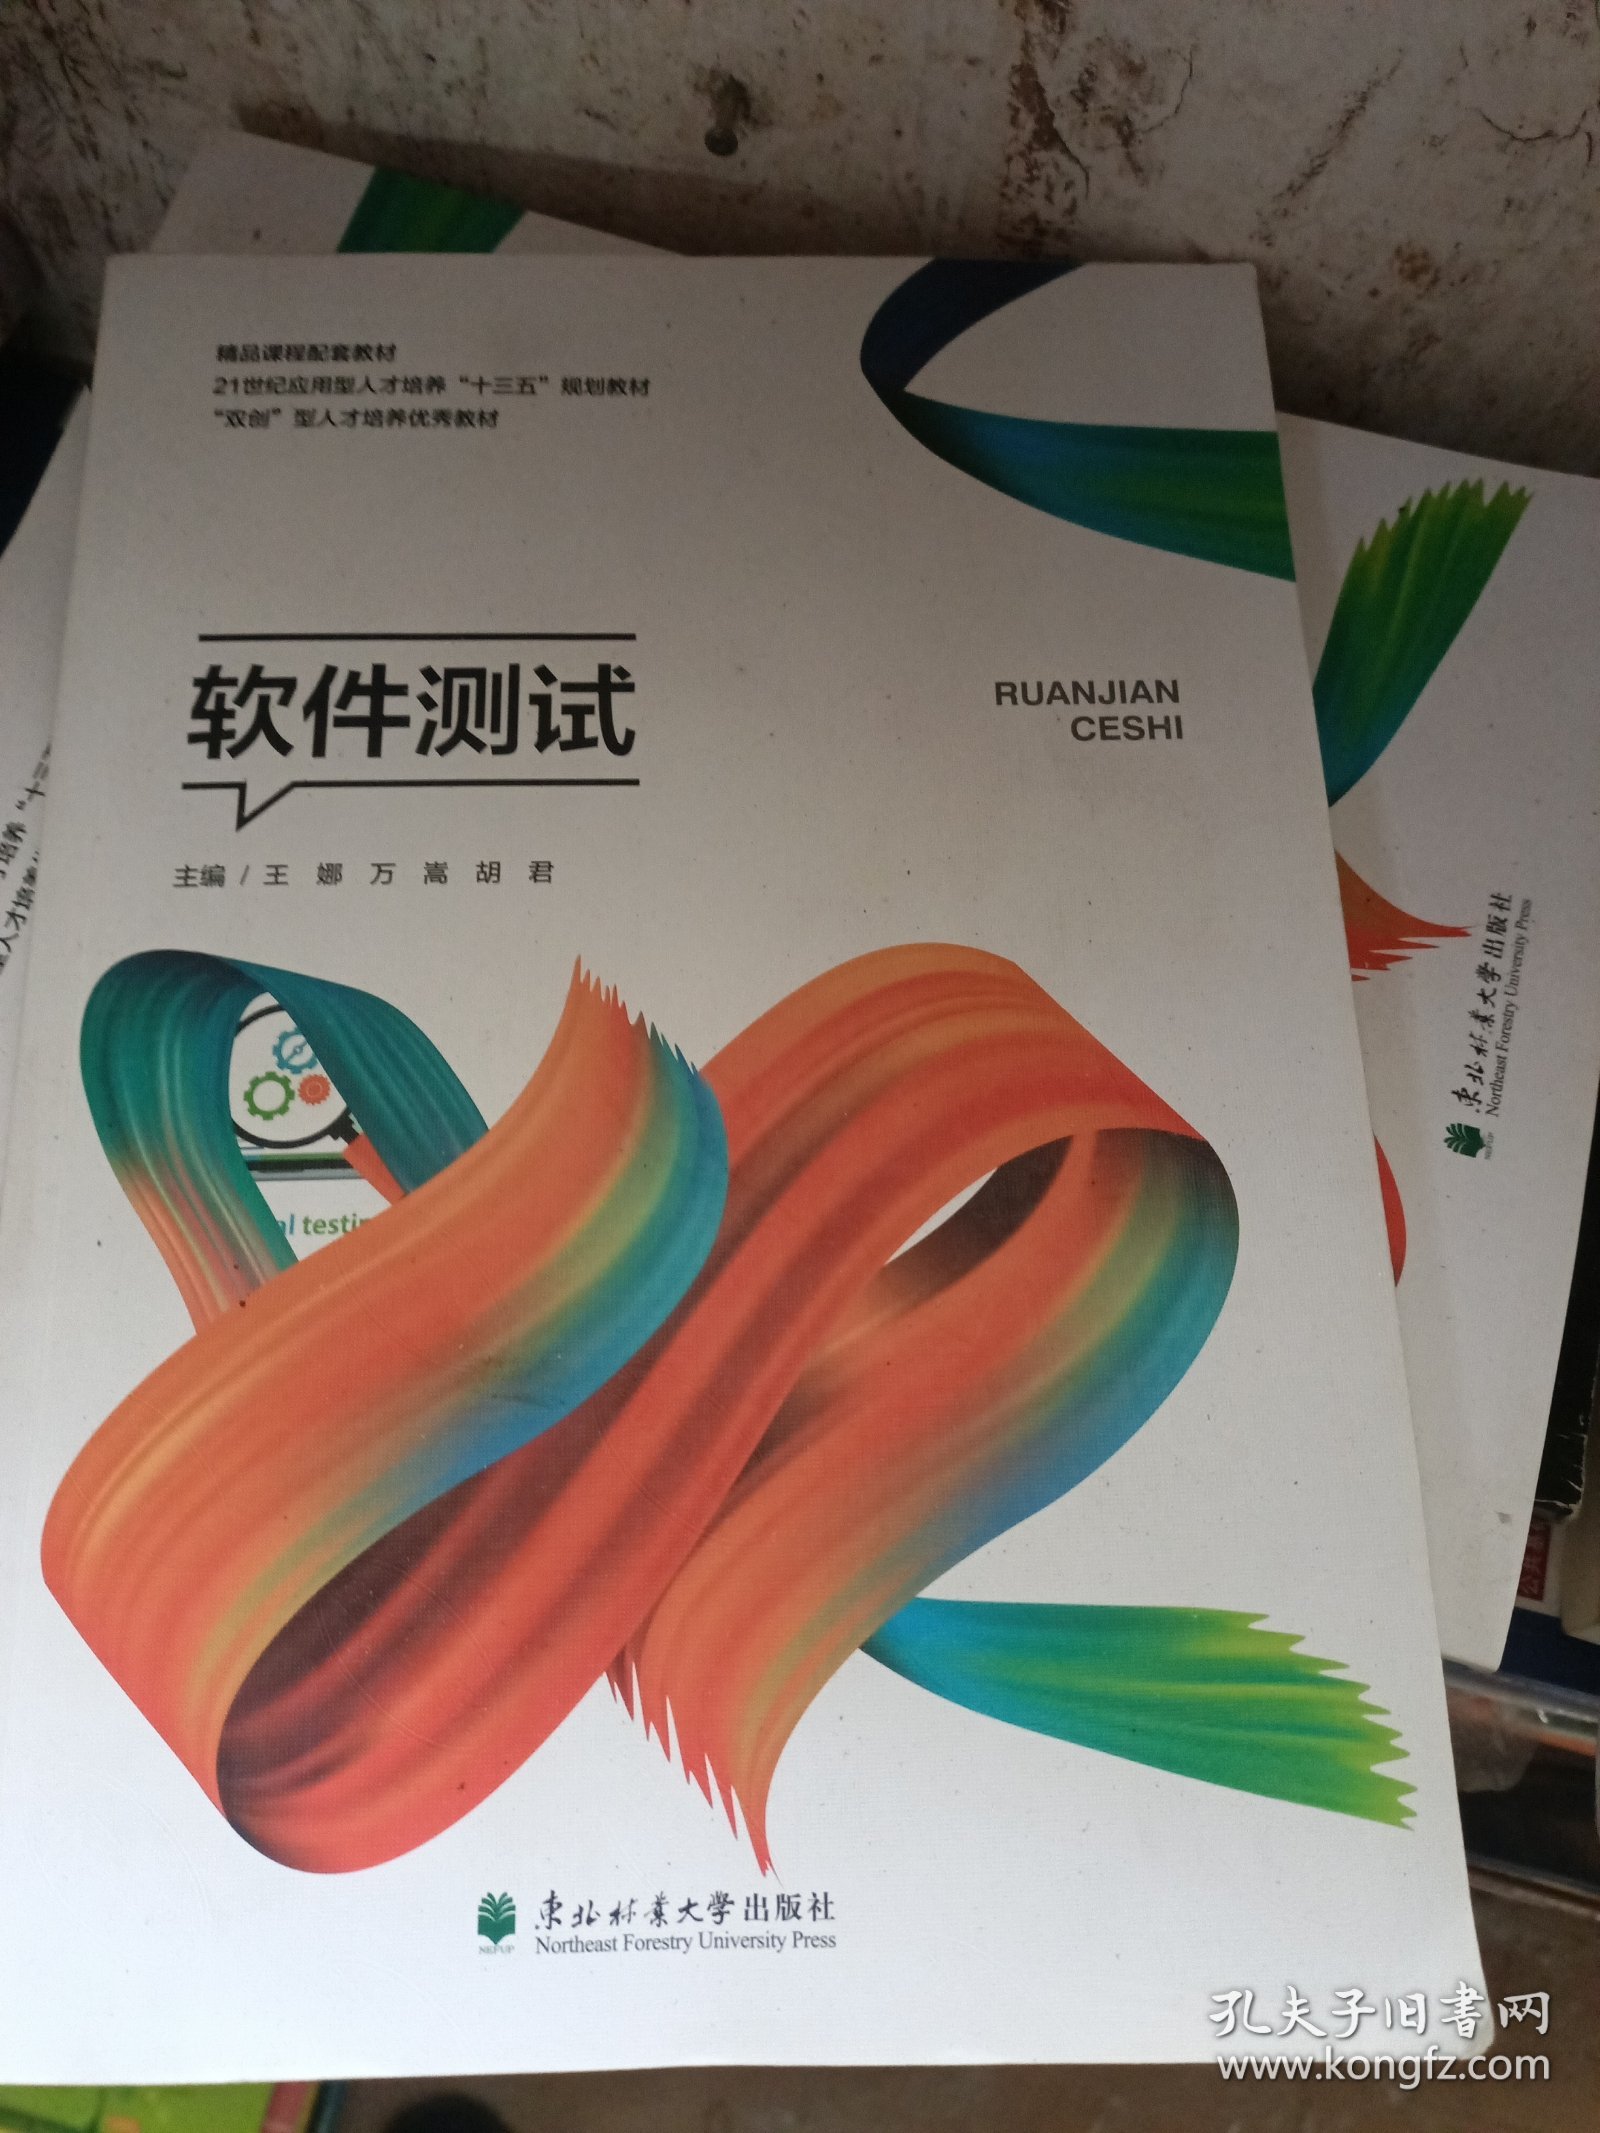 软件测试:双色版 王娜 万嵩 胡君 东北林业大学出版社